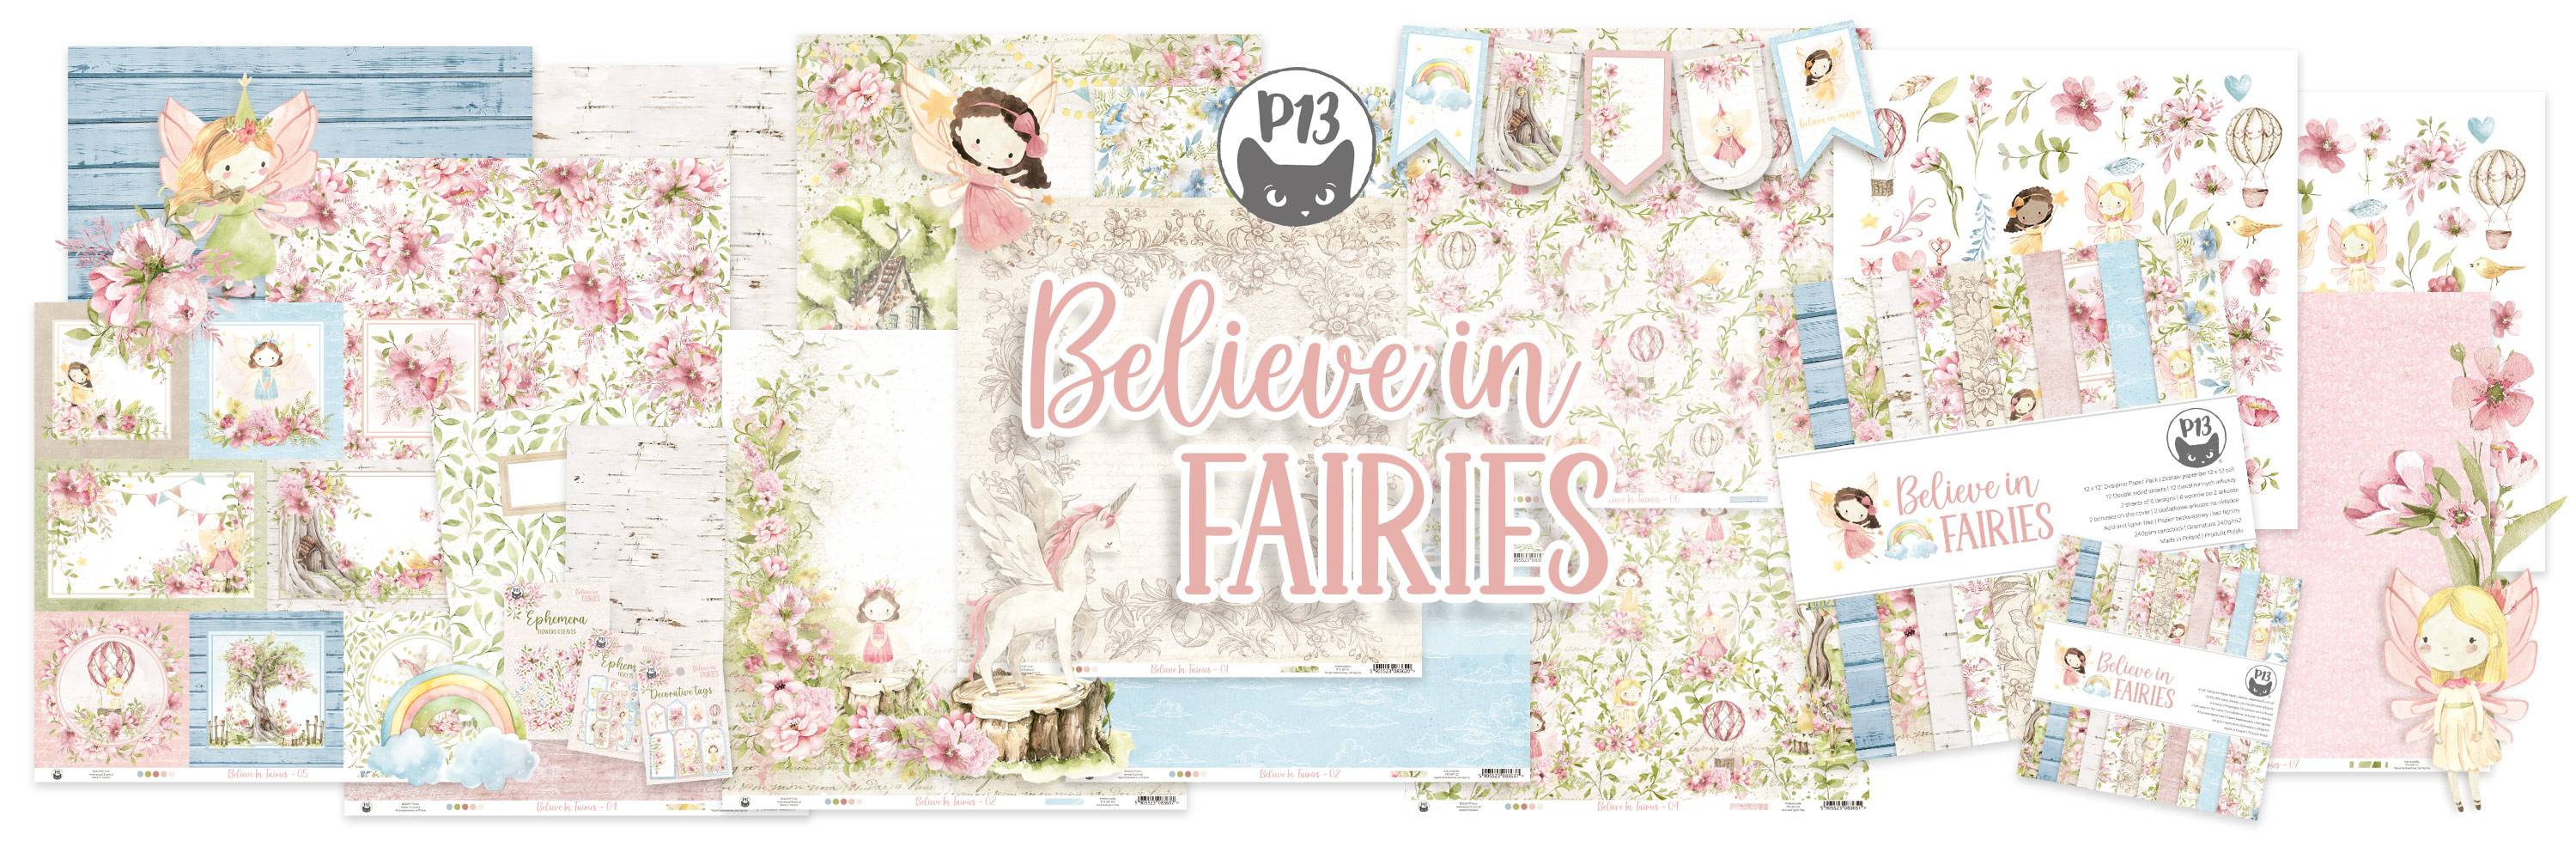 Believe in Fairies